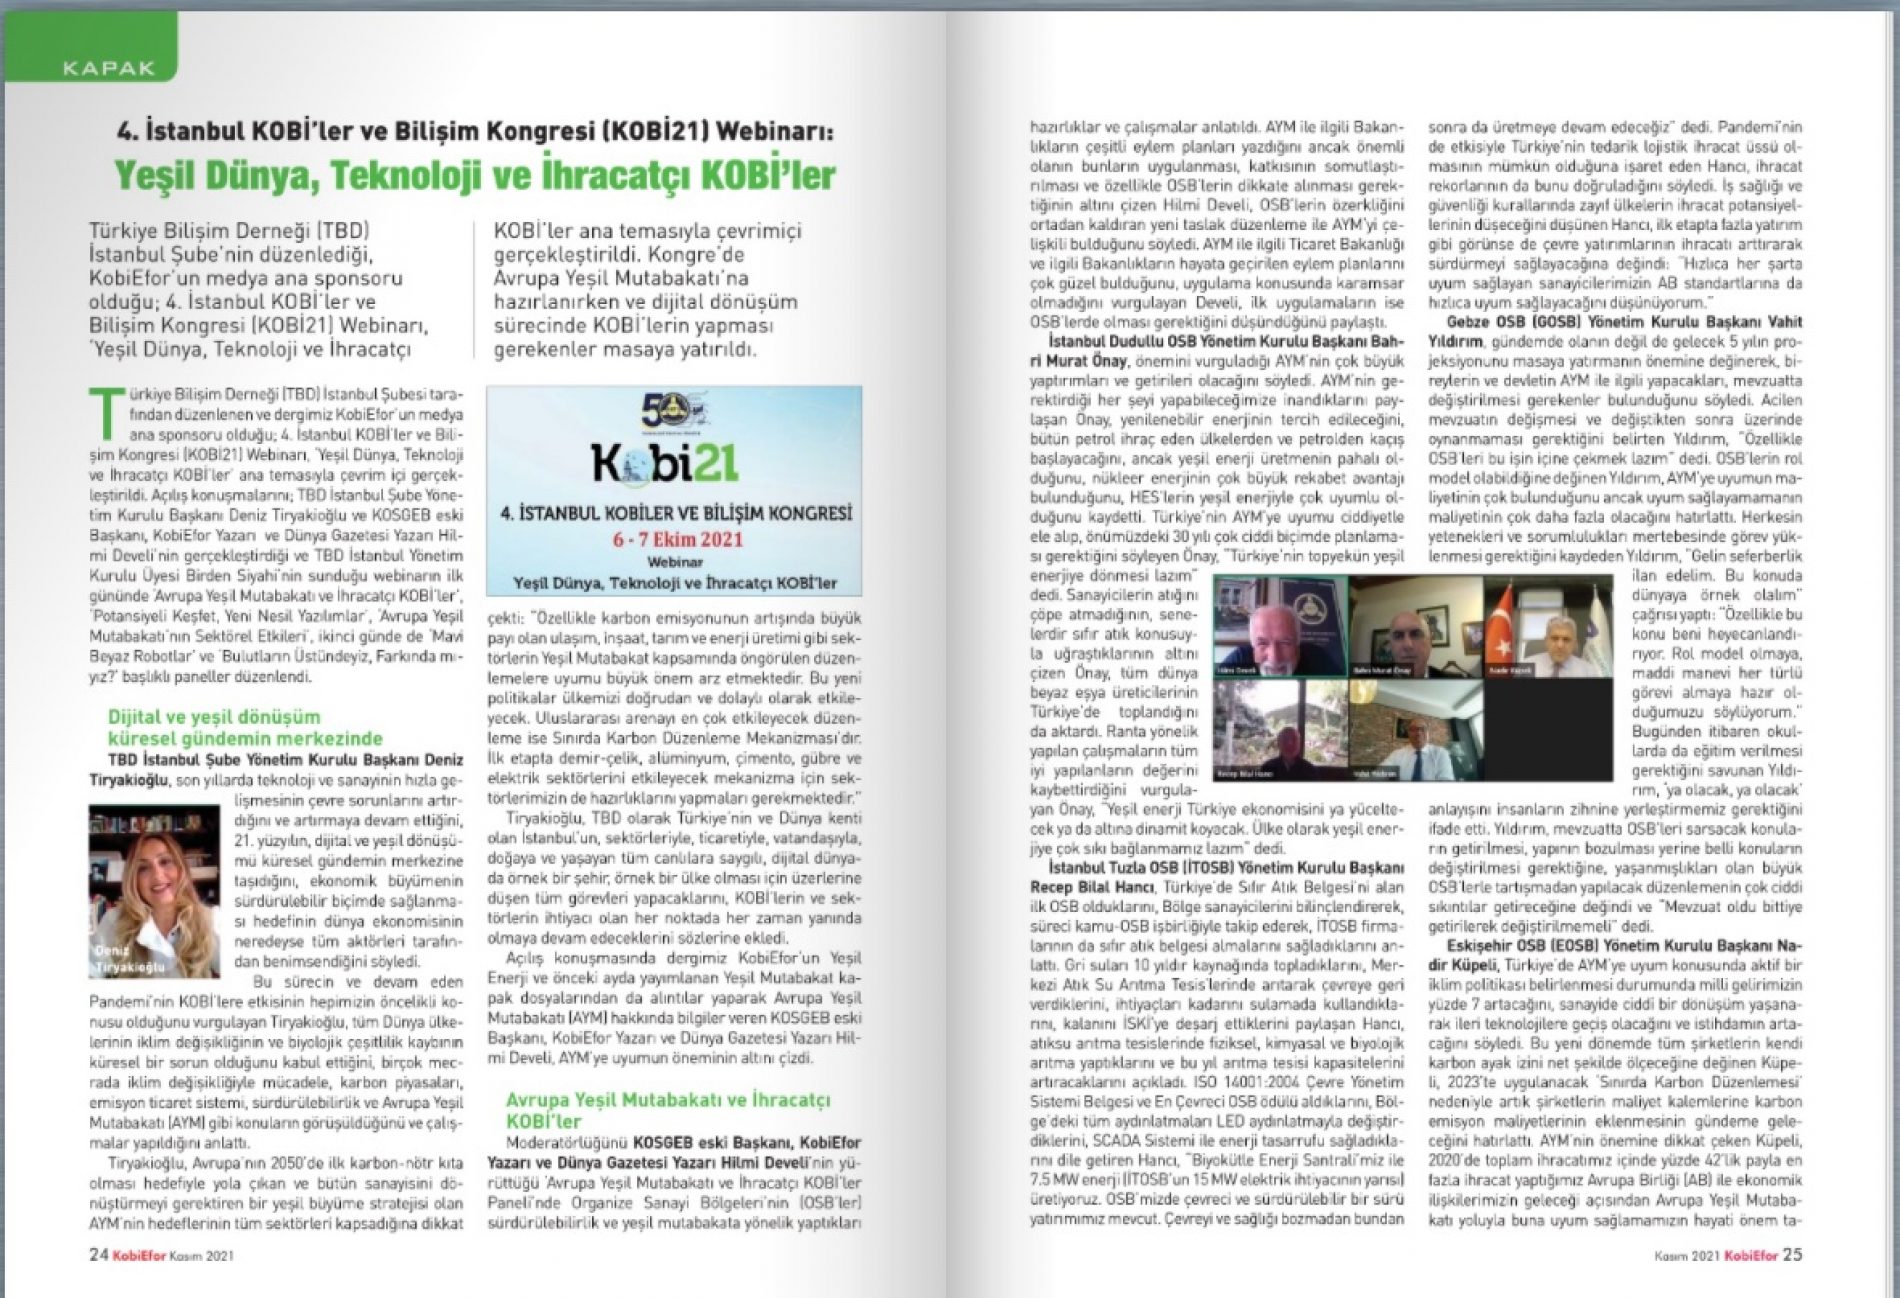 4. İstanbul KOBİ’ler ve Bilişim Kongresi Webinarı: Yeşil Dünya, Teknoloji ve İhracatçı KOBİ’ler